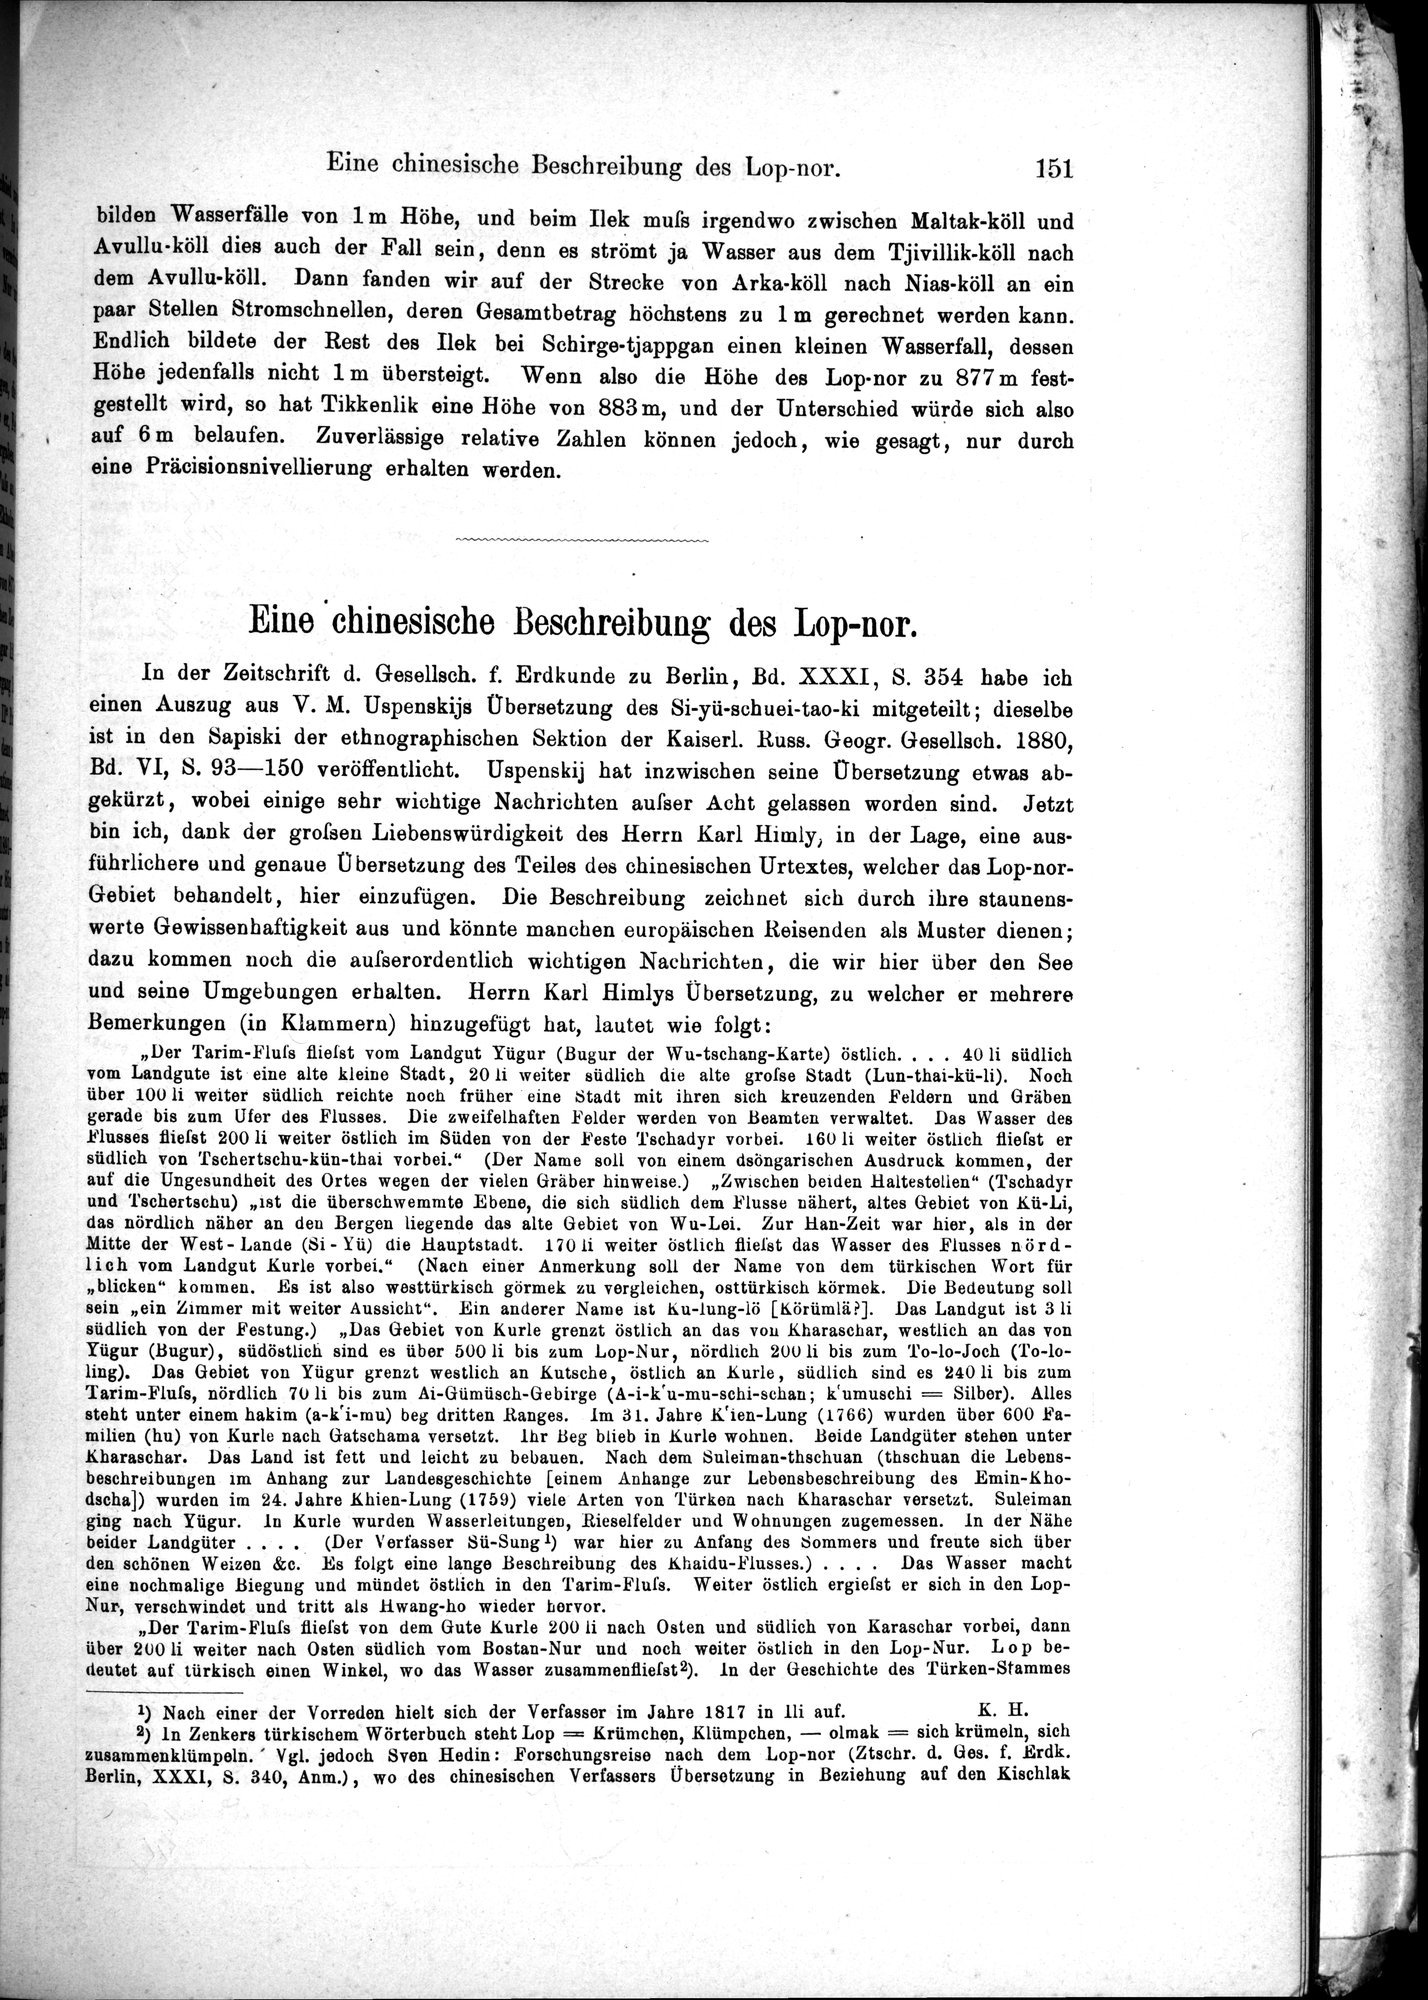 Die Geographische-Wissenschaftlichen Ergebnisse meiner Reisen in Zentralasien, 1894-1897 : vol.1 / Page 163 (Grayscale High Resolution Image)